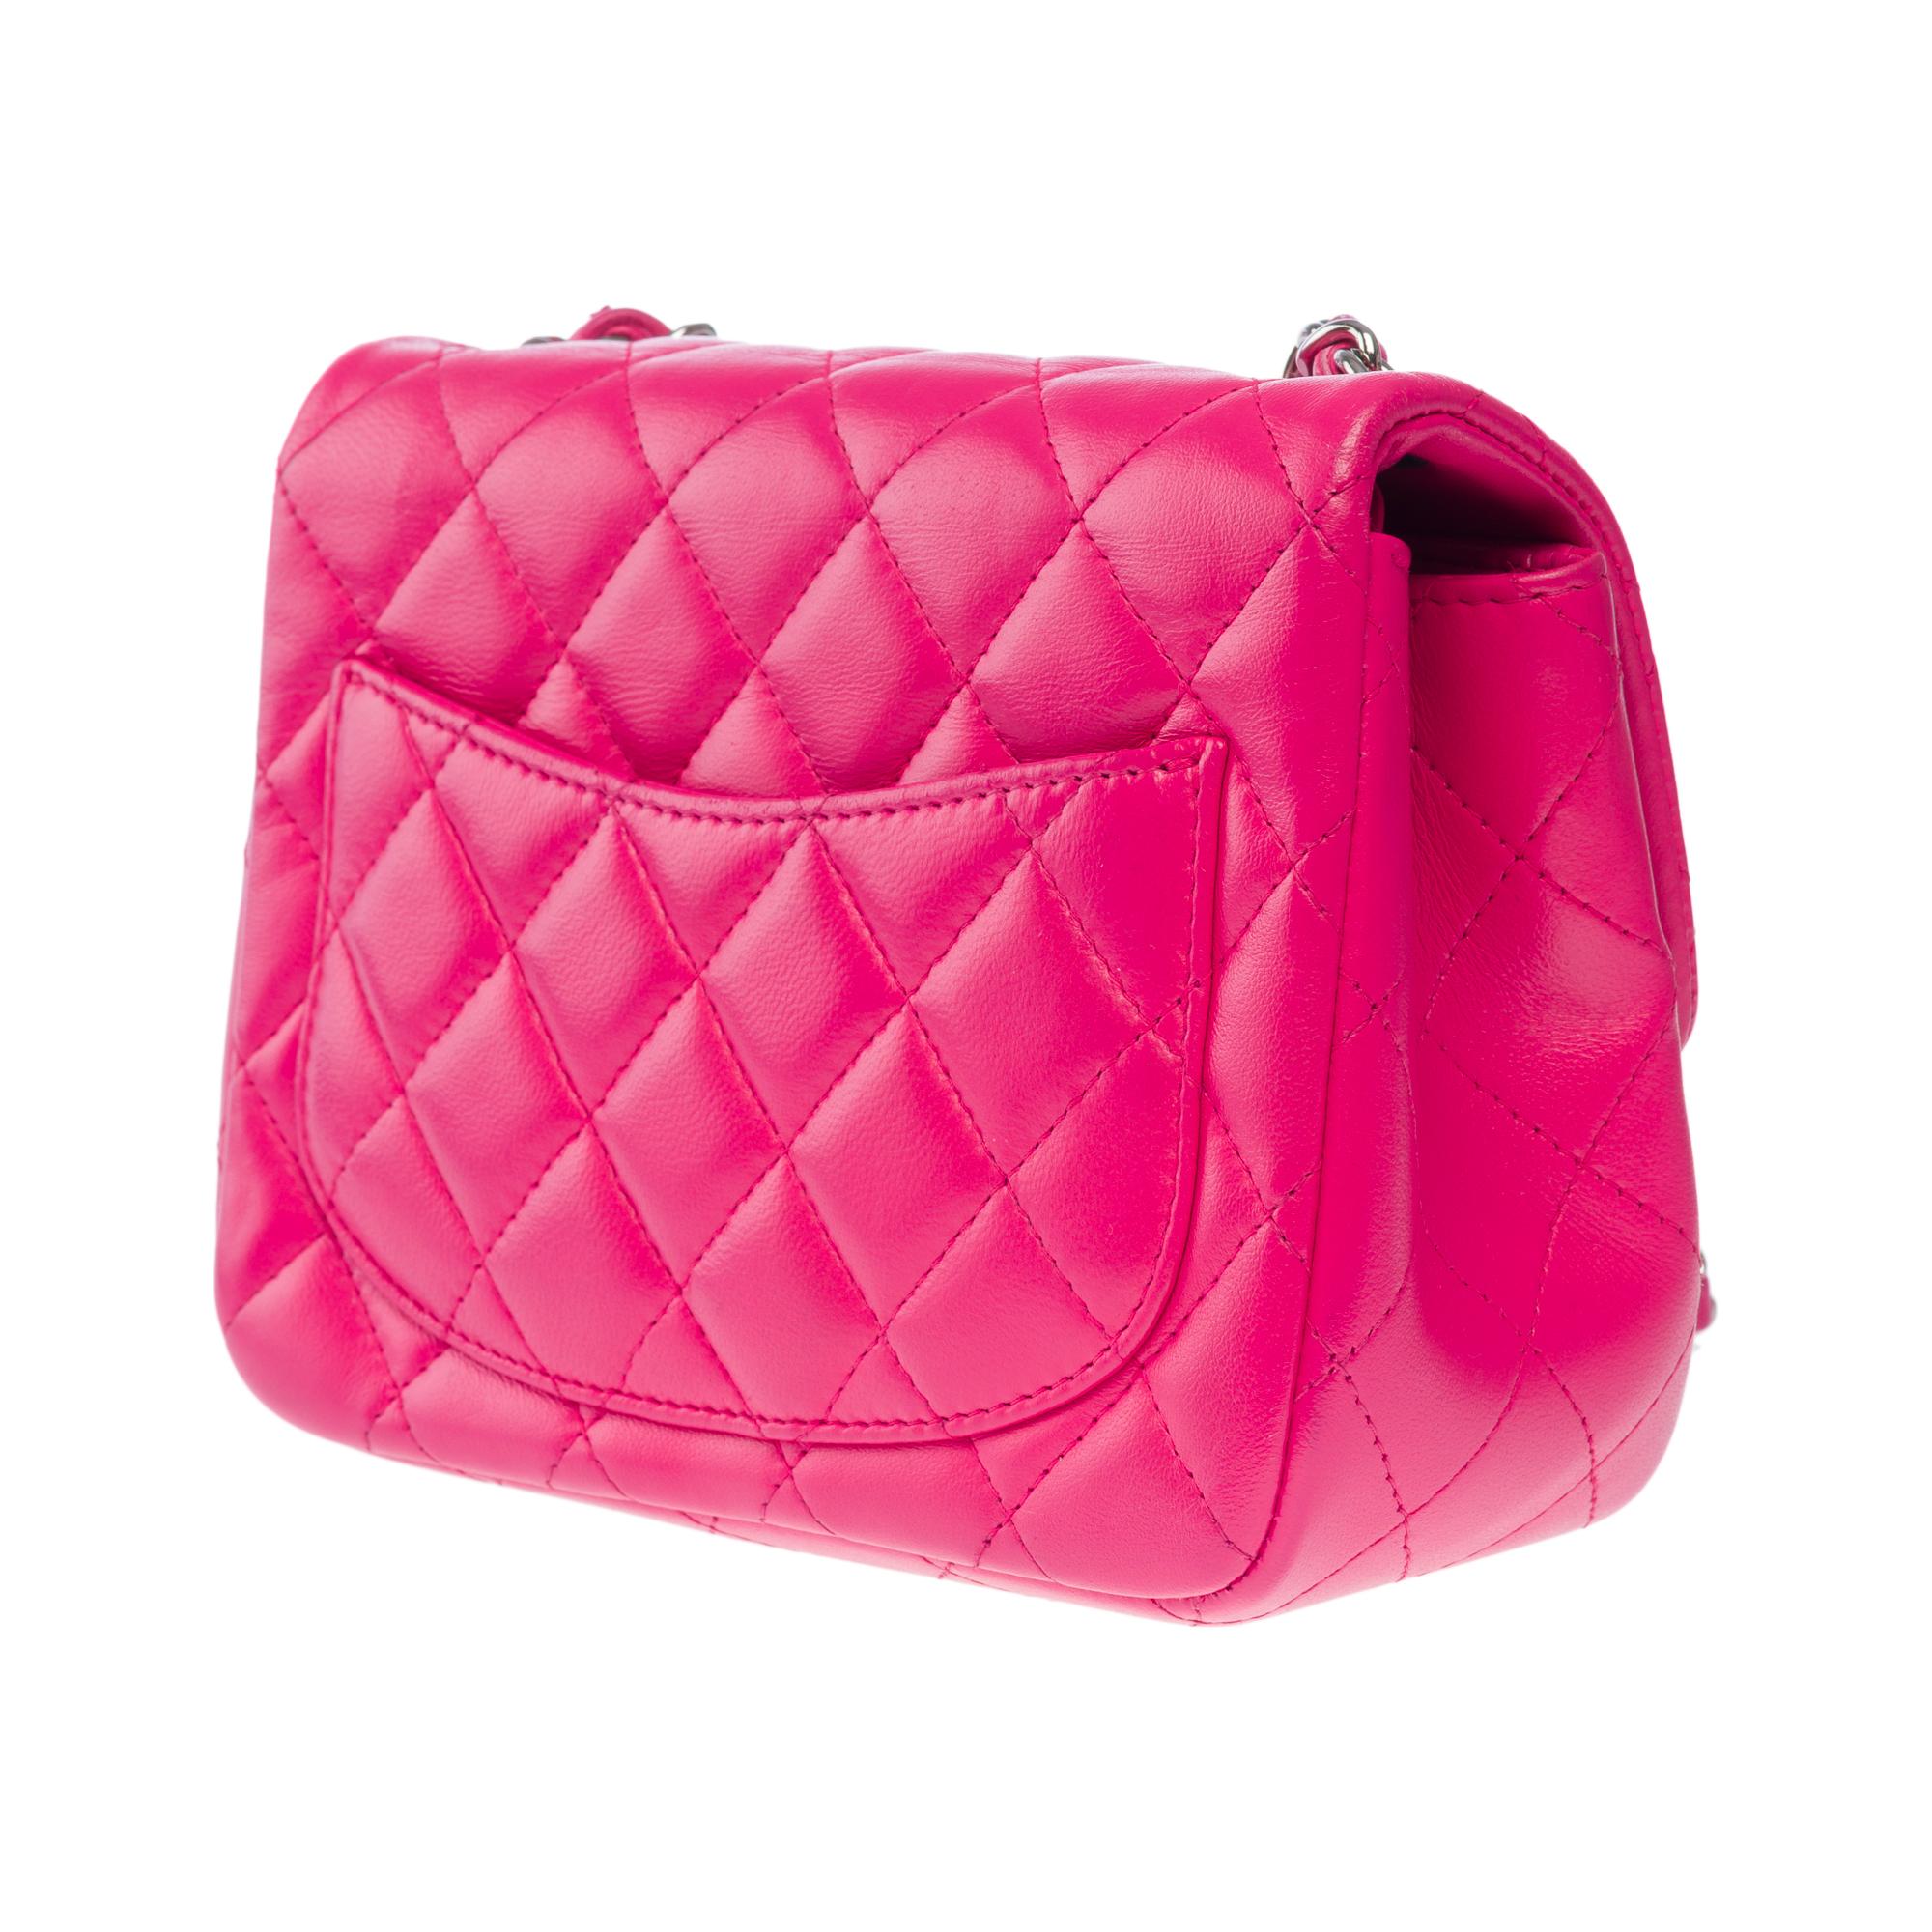 Magnifique sac à bandoulière Mini Timeless de Chanel en cuir matelassé rose, SHW 1